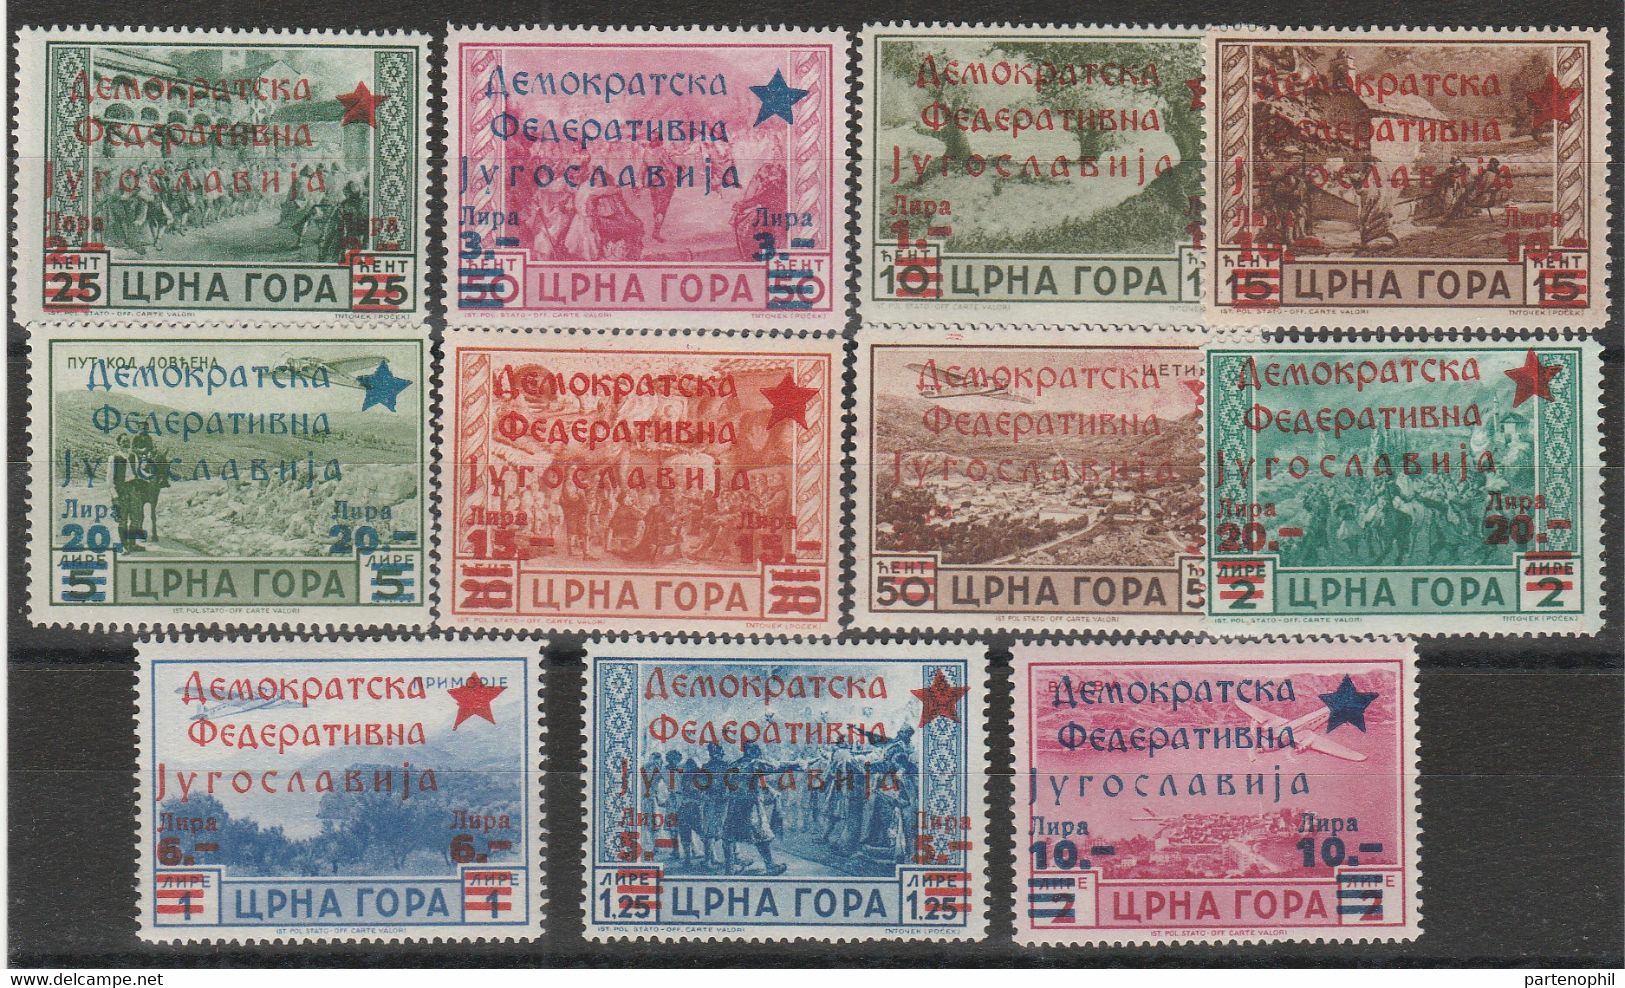 327 Montenegro (Amministrazione Jugoslava)  1945 - Soprastampati In Rosso 11 Valori. MNH - Montenegro